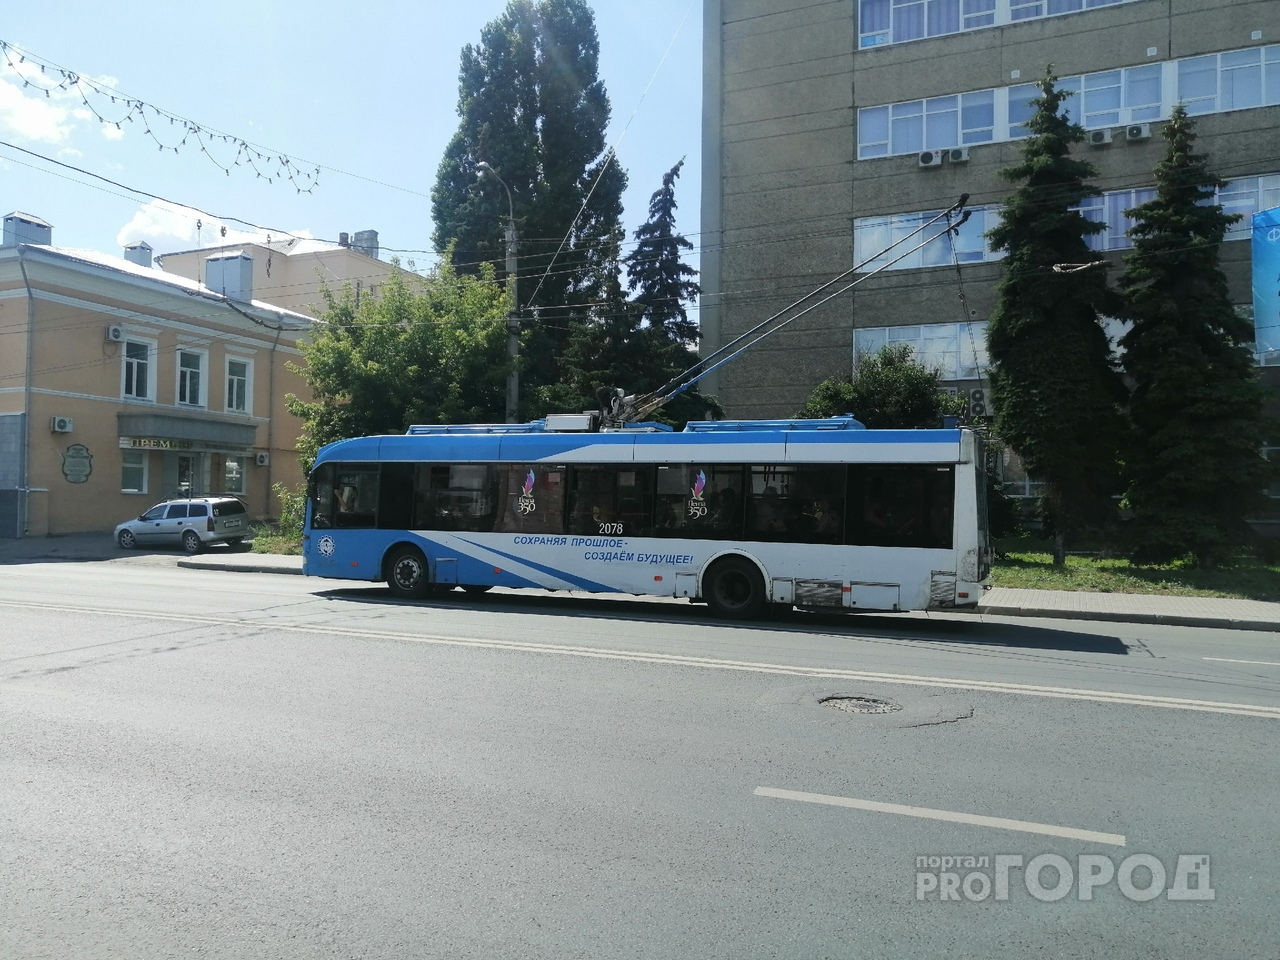 "Троллейбусов стало в два раза меньше": пензячка показала на видео проблему общественного транспорта